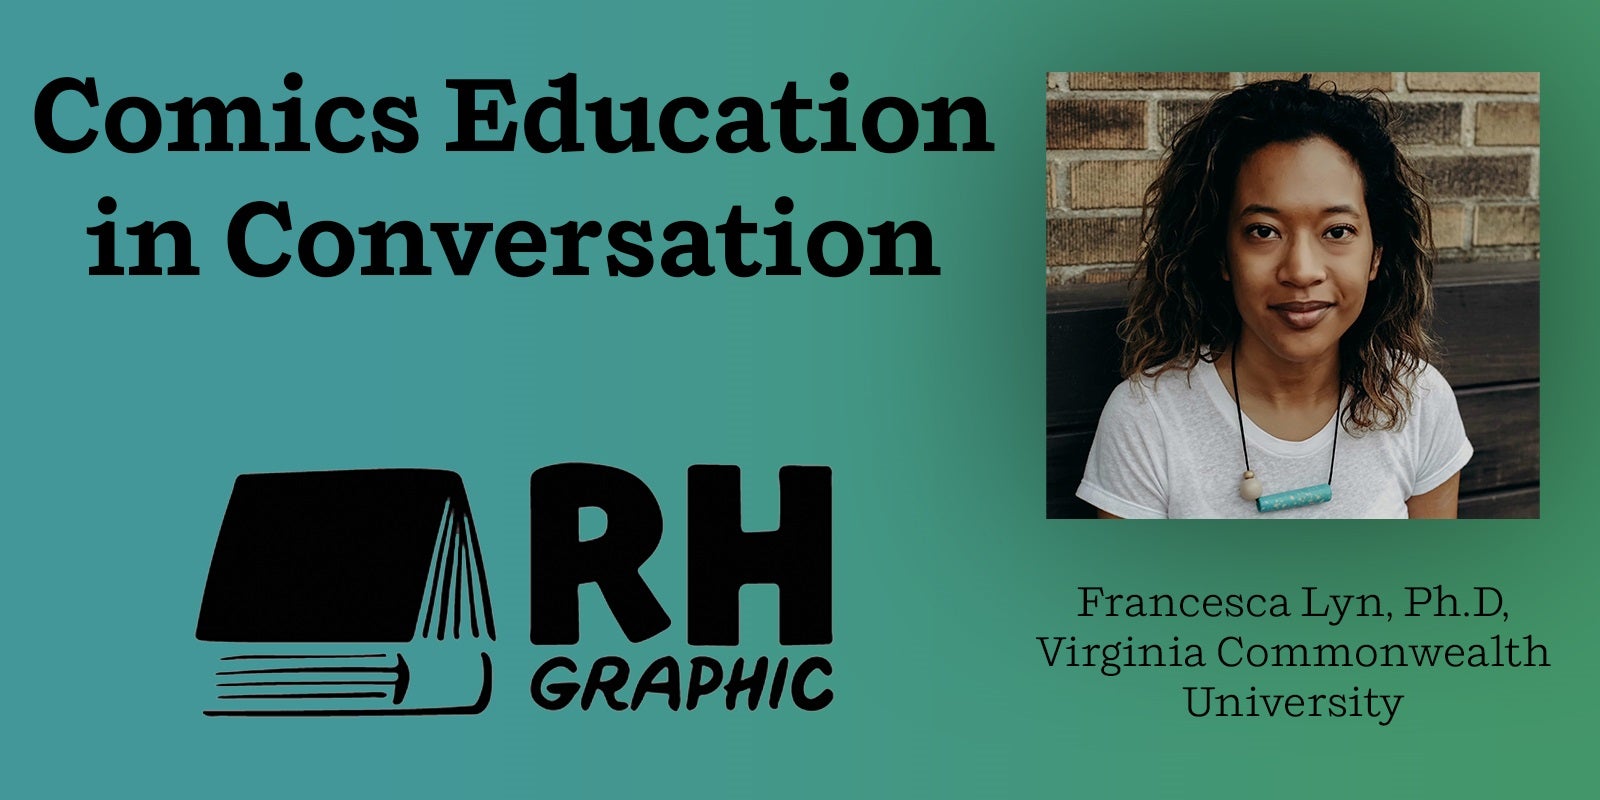 Comics Education in Conversation: Francesca Lyn